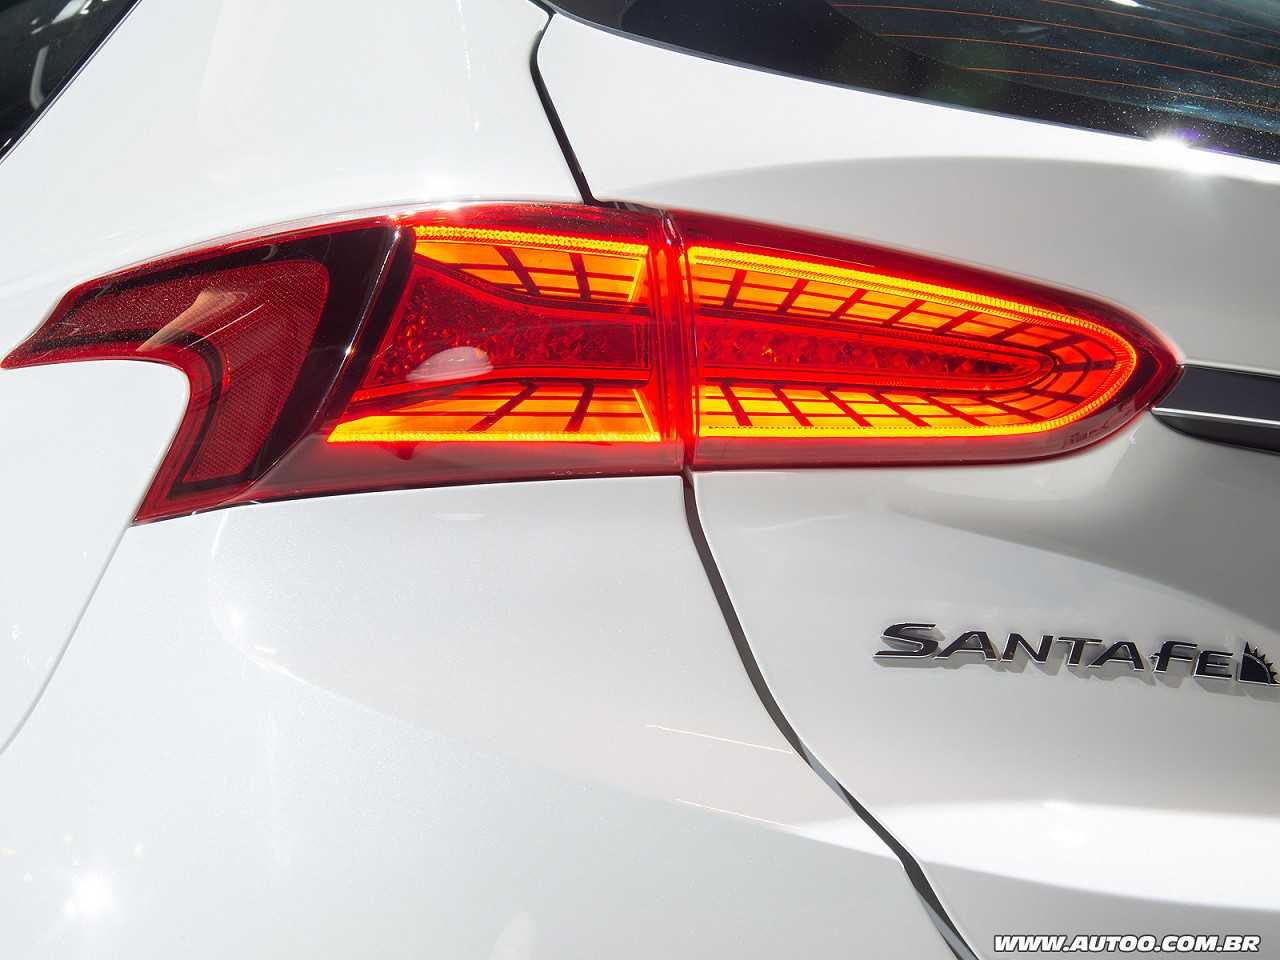 HyundaiSanta Fe 2019 - lanternas